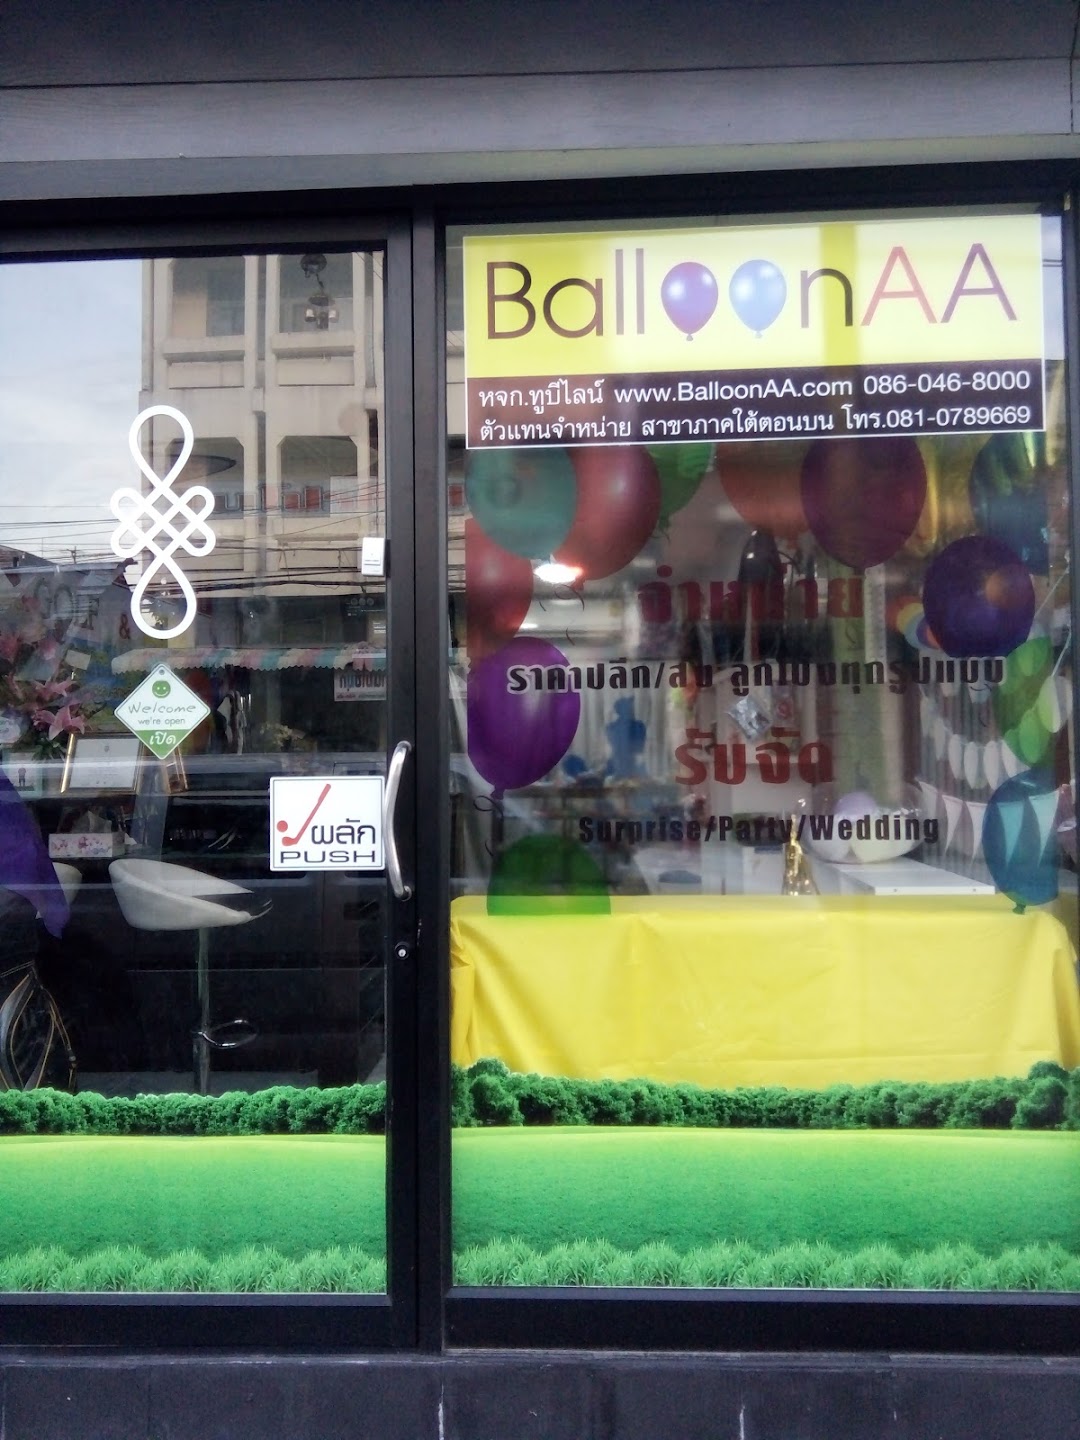 ร้านลูกโป่ง Balloon AA